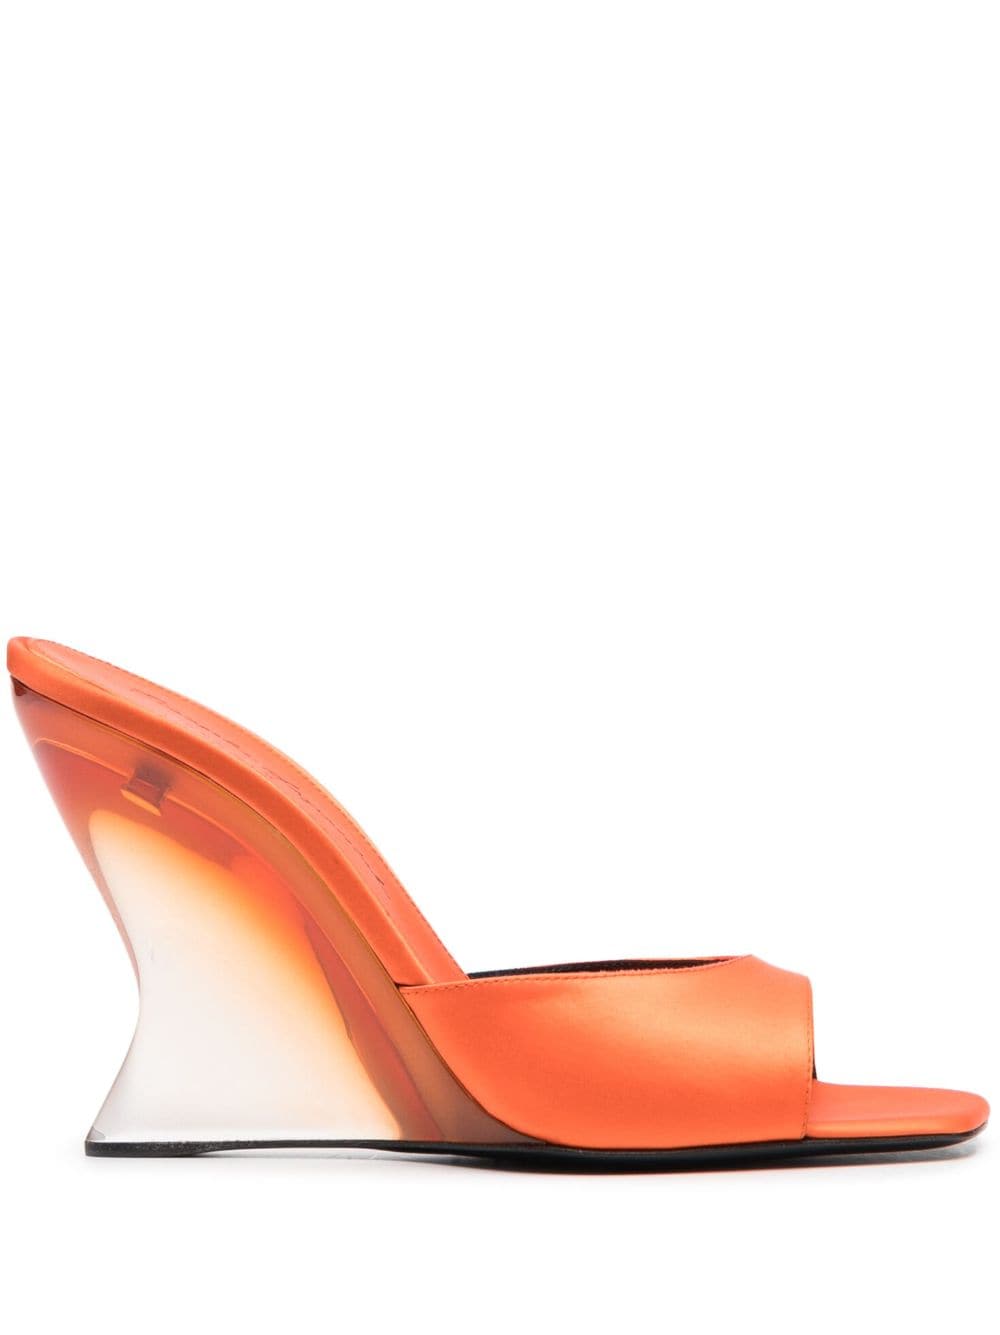 Sergio Rossi Square-toe Leather Mules In Orange